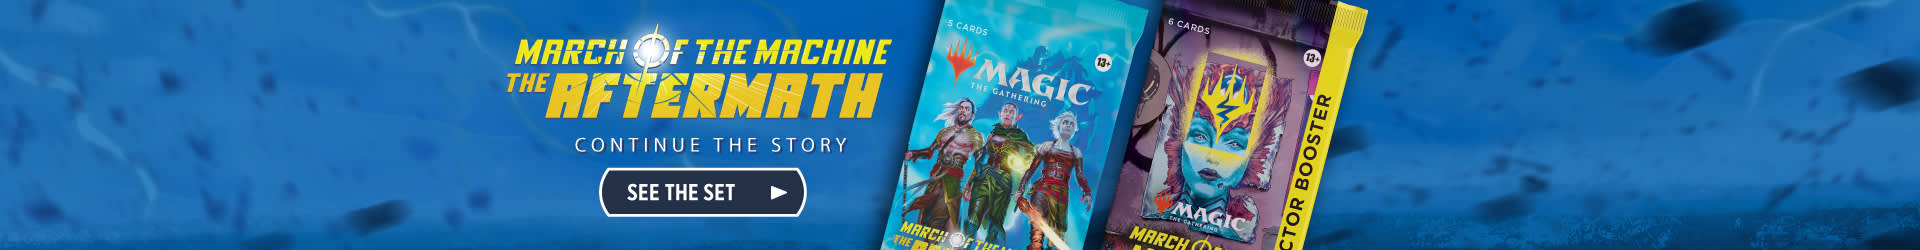 Magic The Gathering: March of the Machine Ricondizionamento